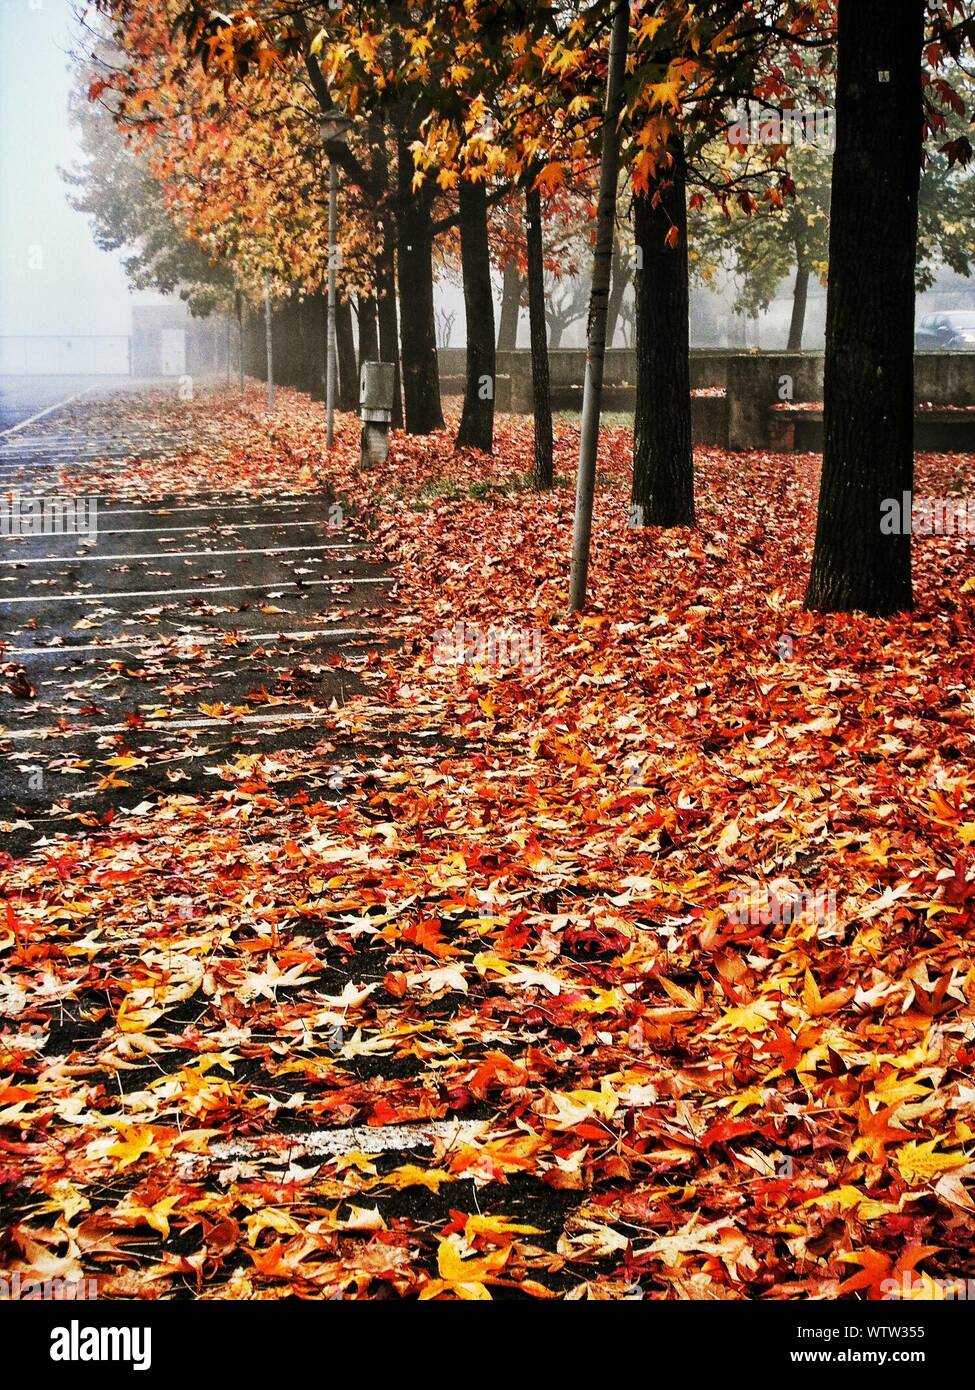 Fallen Autumn Leaves On Street Stock Photo